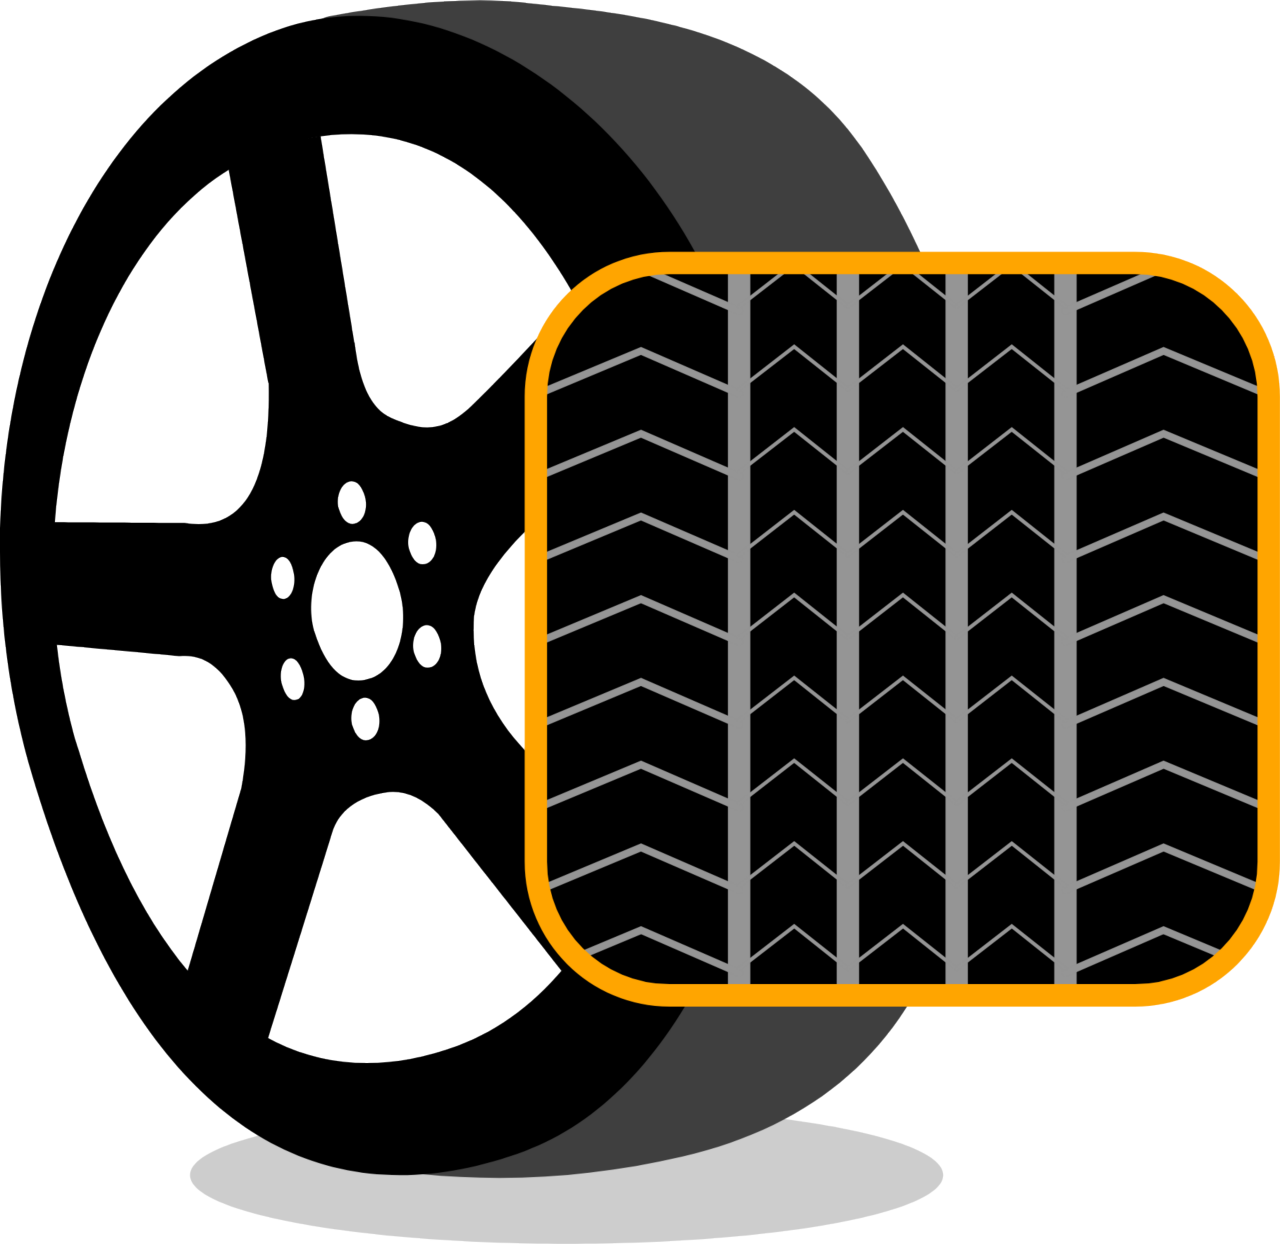 자동차 타이어의 방향성 패턴을 보여주는 그래픽.